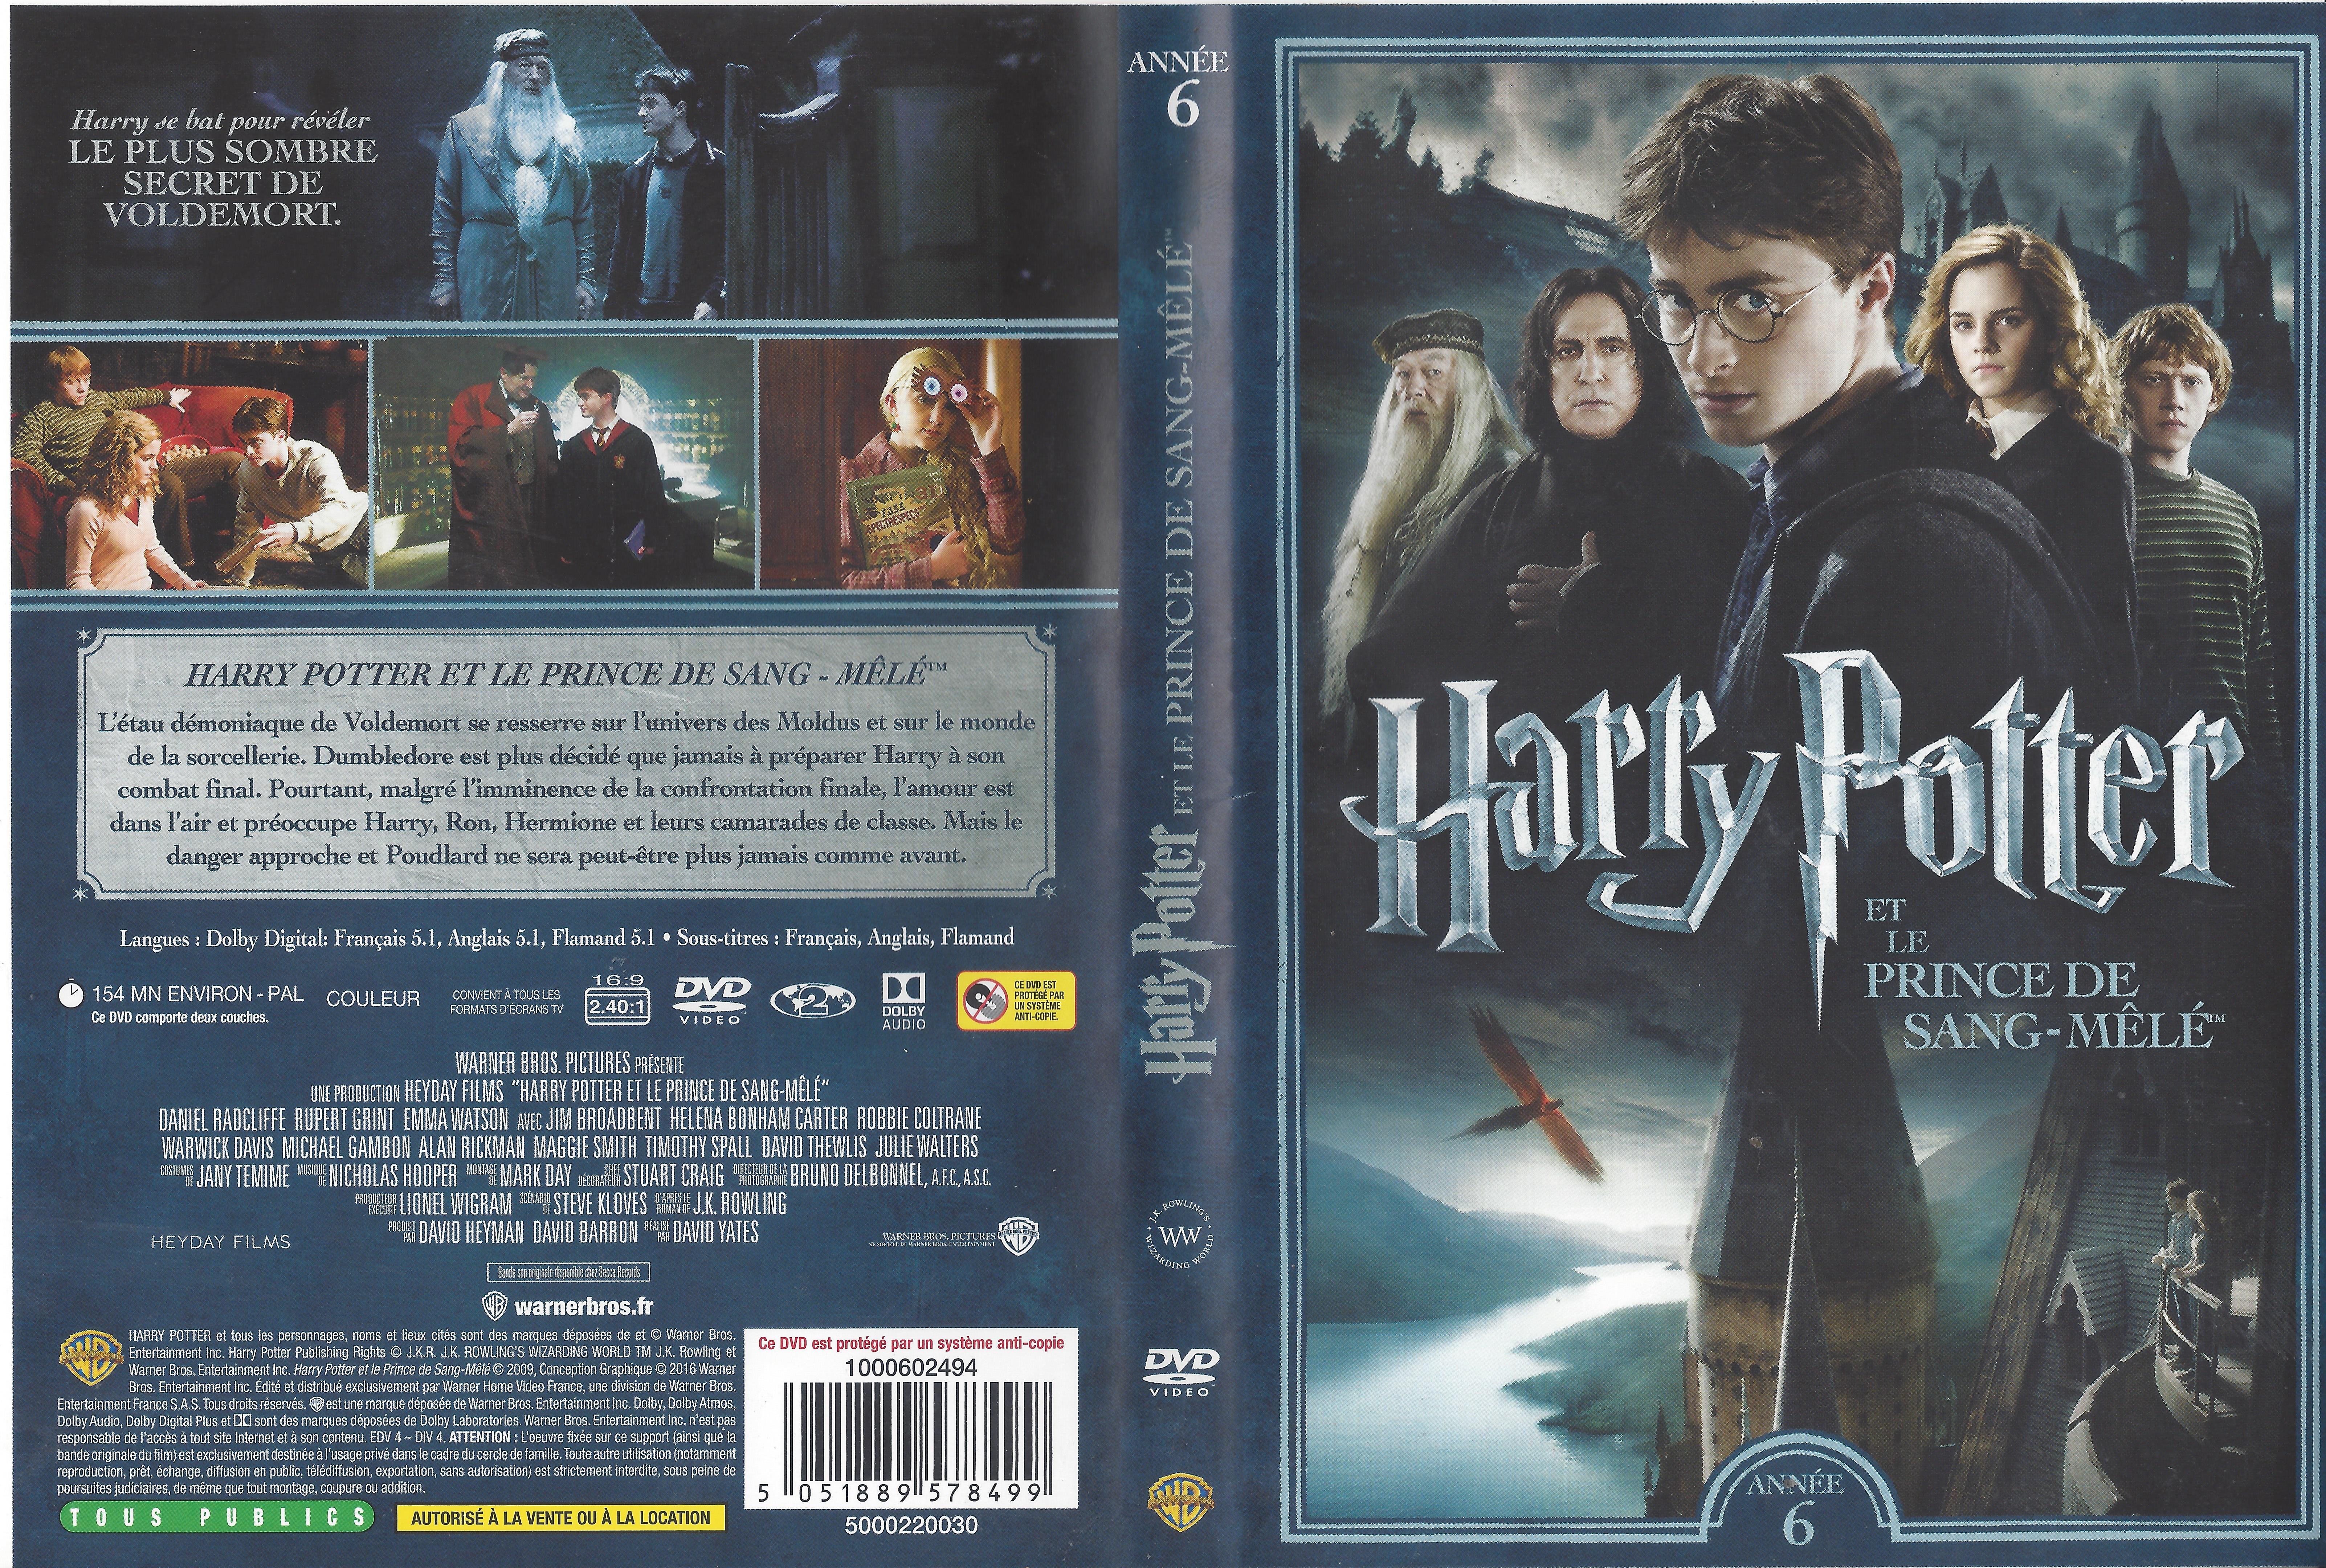 Jaquette DVD Harry Potter et le Prince de Sang-Ml v3